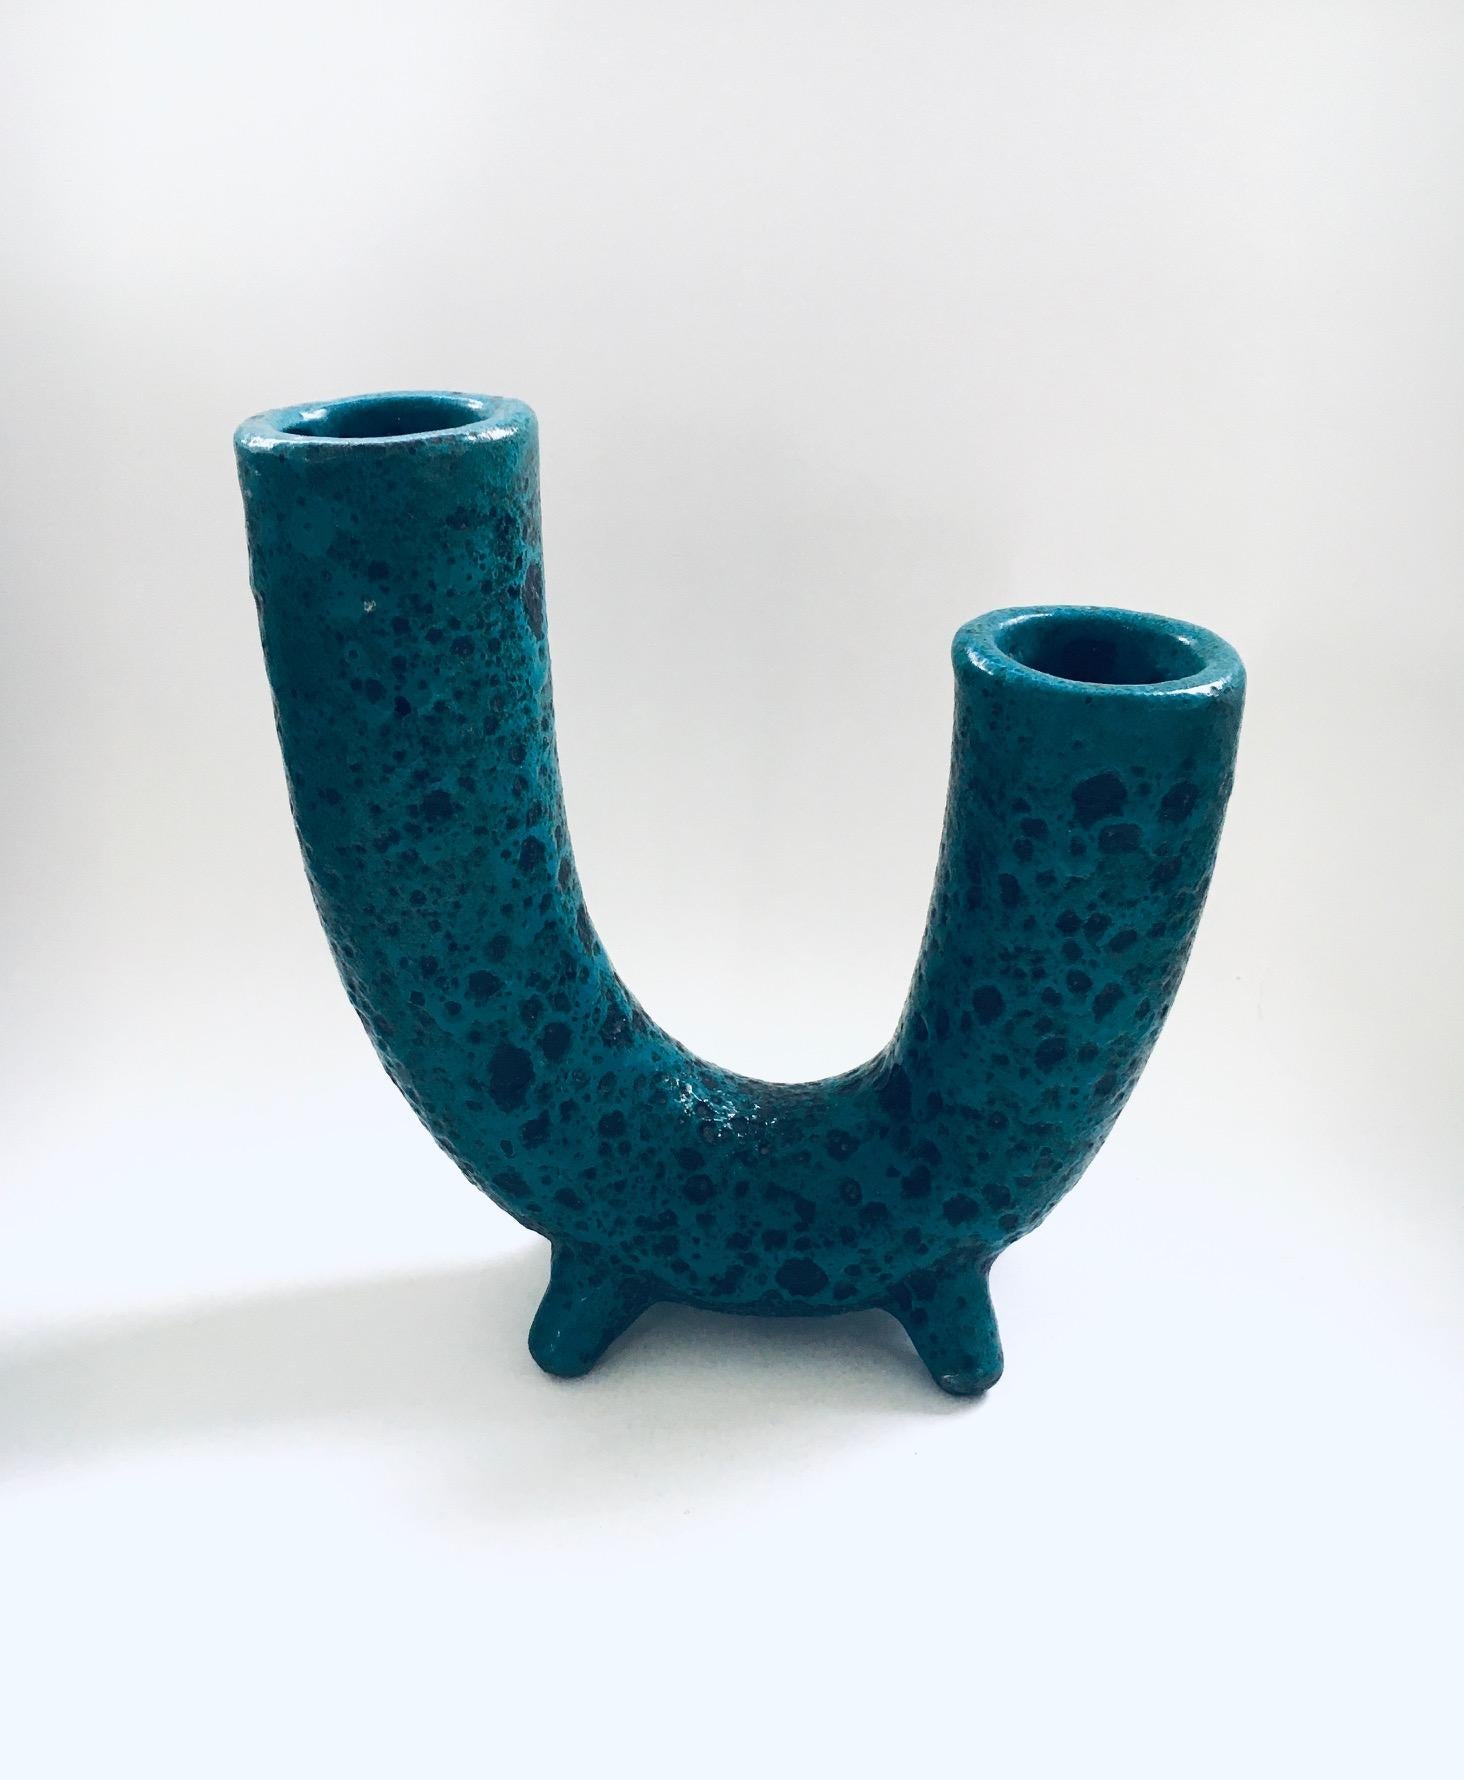 Belgian Brutalist Art Pottery Studio Fat Lava Horn Spout Vase, Belgium 1960's For Sale